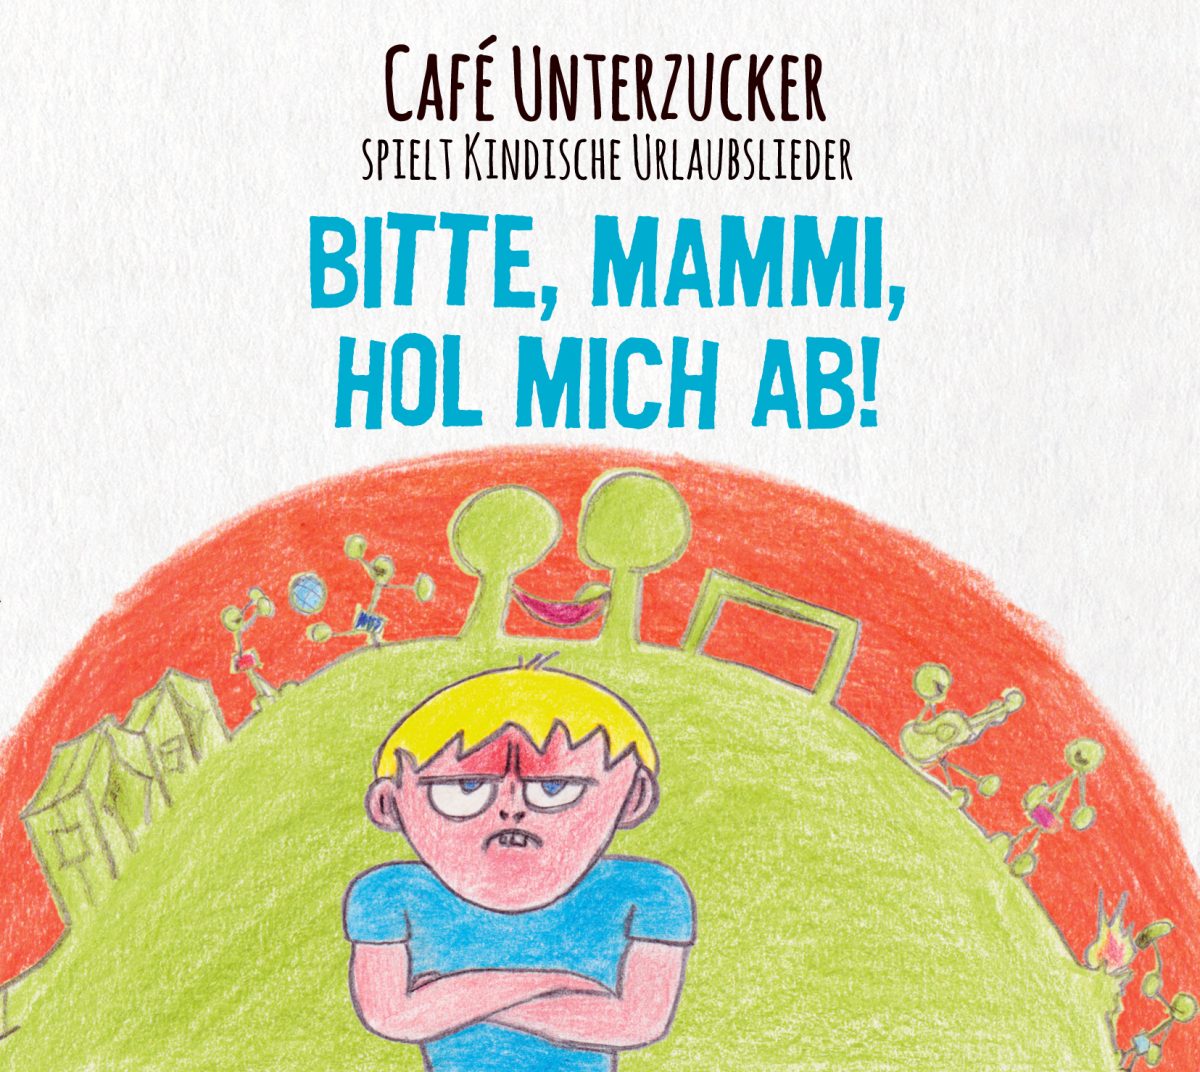 Café Unterzucker live im Milla (CD-Release Konzert)